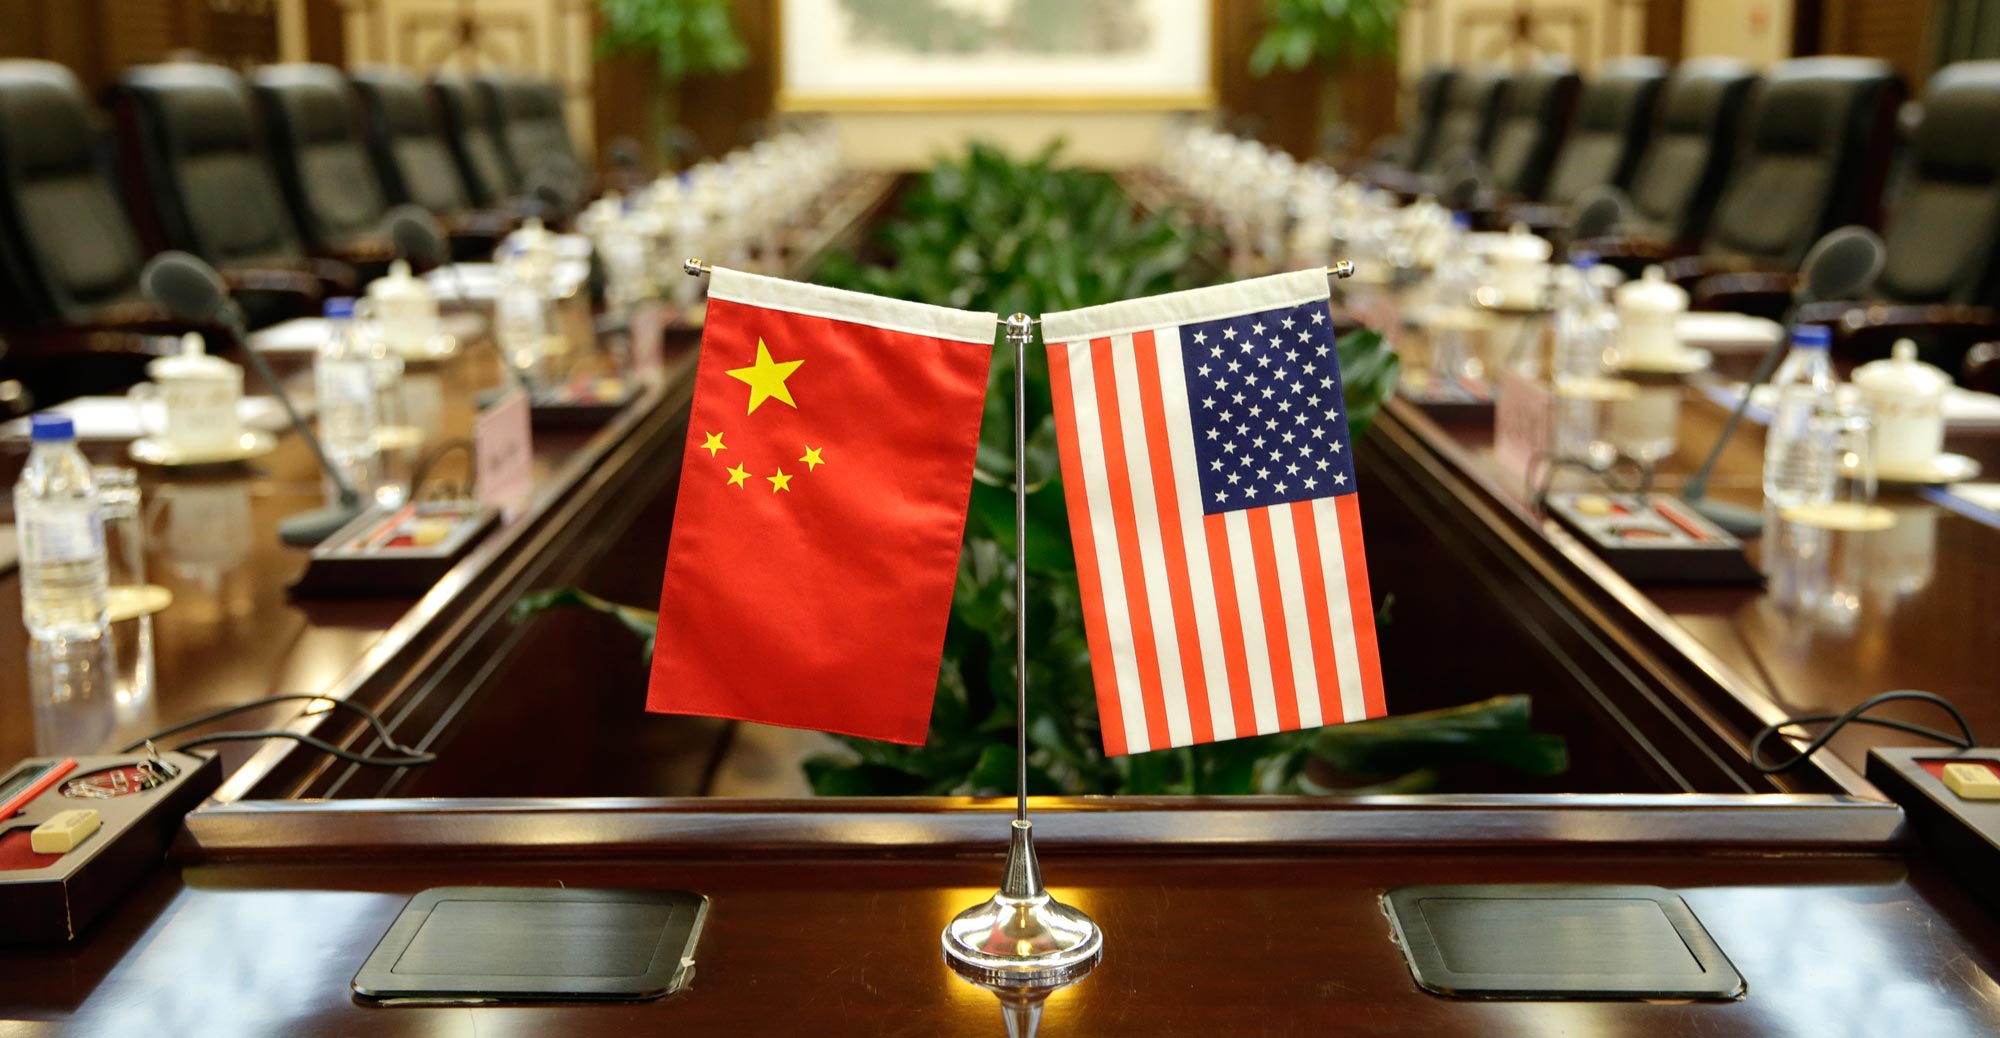 中國有機會超越美國嗎？ 硬實力是唯一辦法，統一台灣是關鍵因素